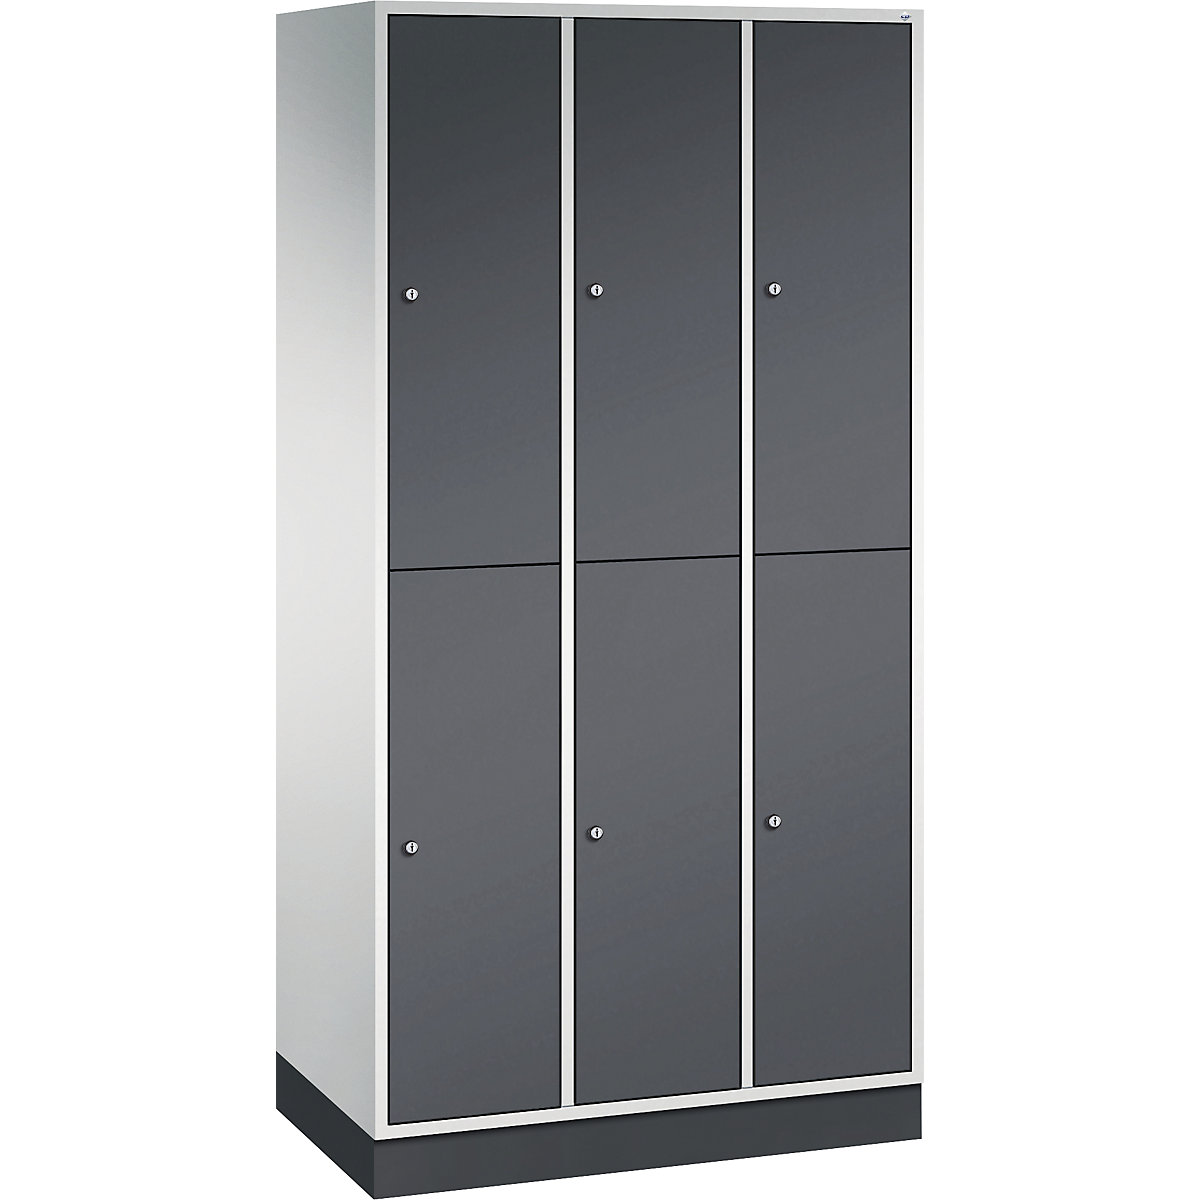 INTRO double tier steel cloakroom locker – C+P, WxD 920 x 500 mm, 6 compartments, light grey body, black grey doors